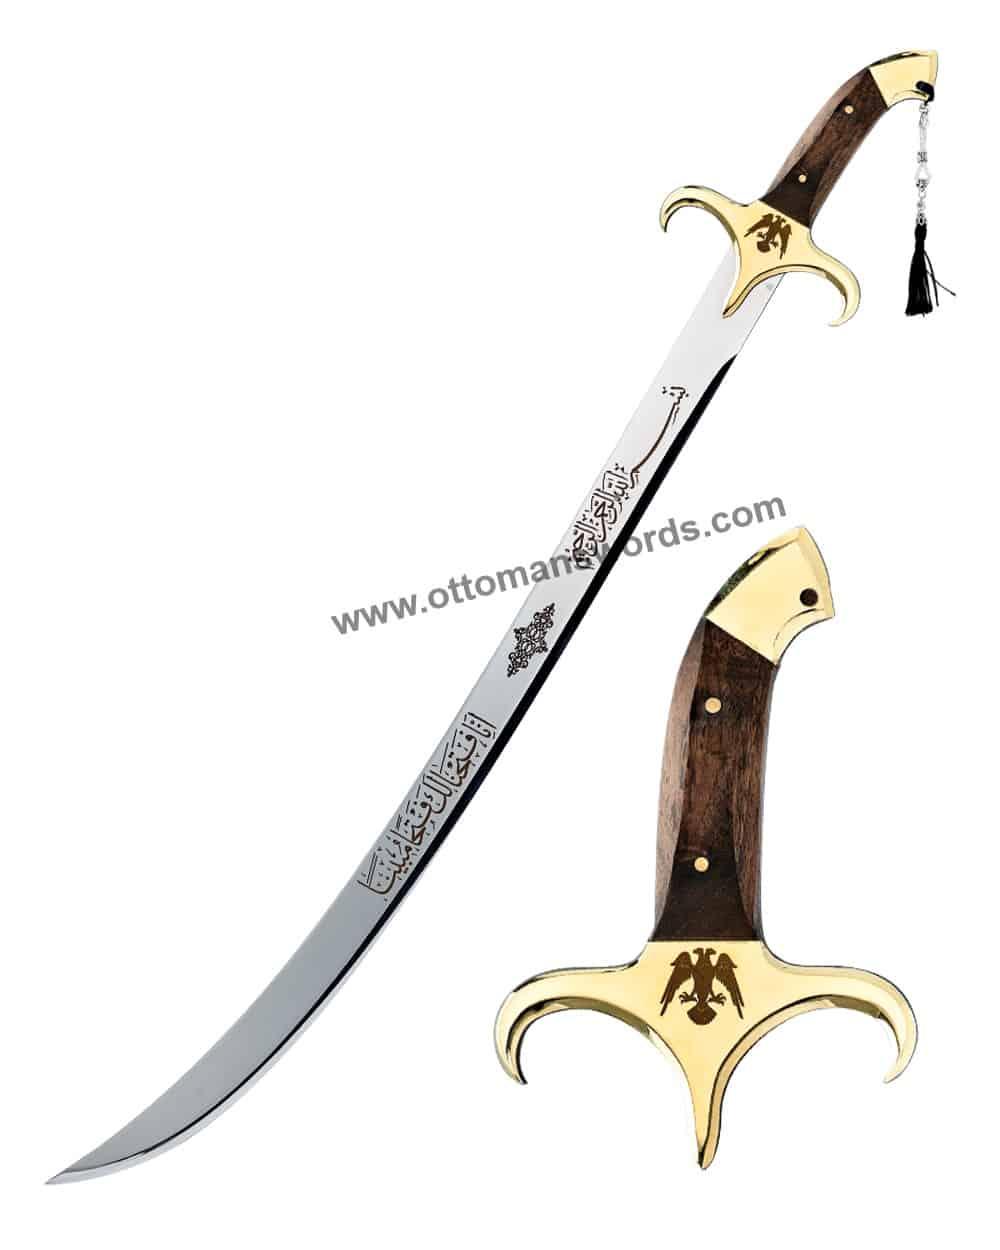 Uyanis Seljuks Sword buy online